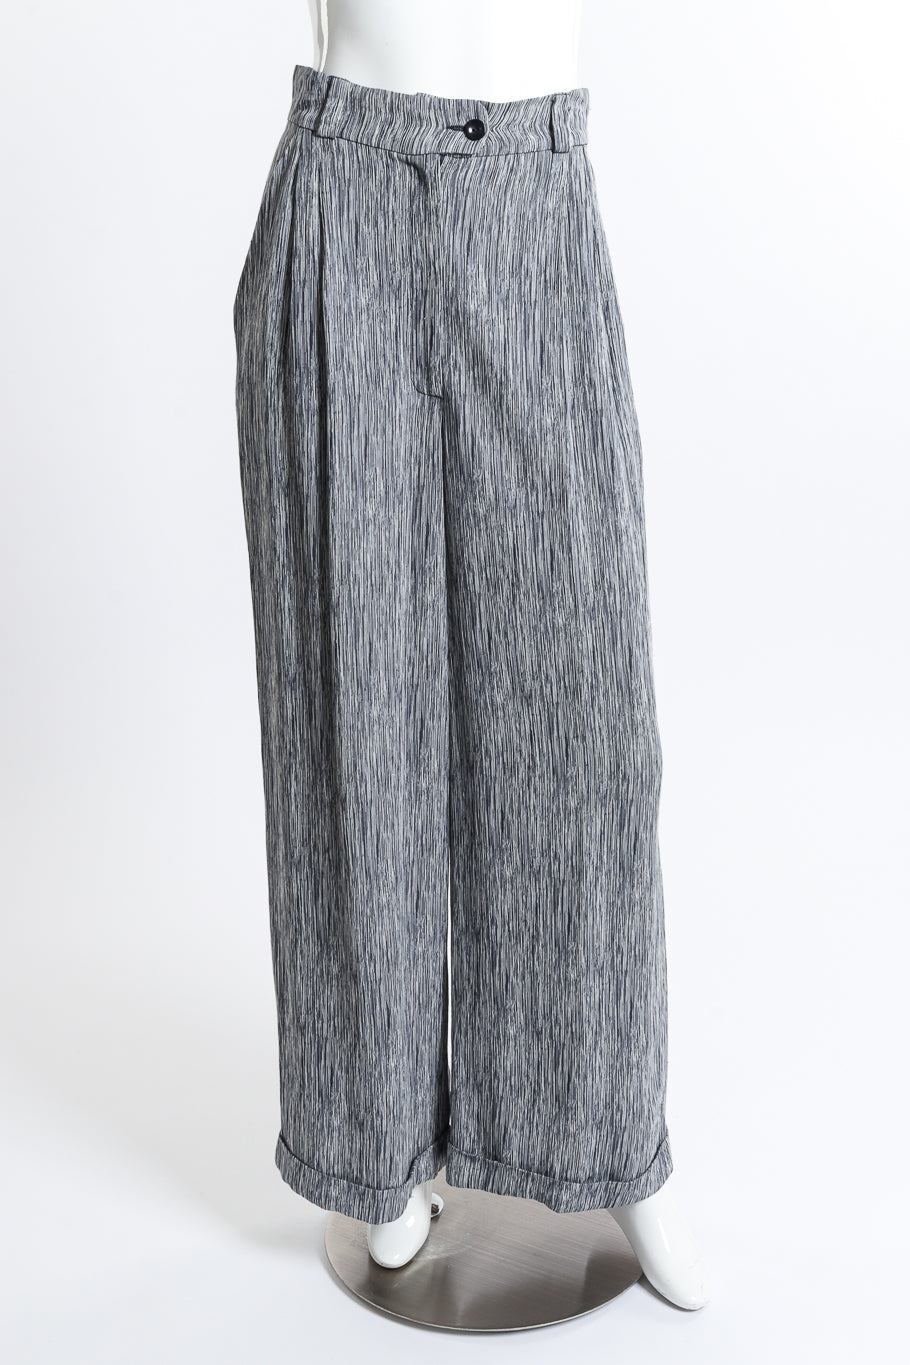 Chloé Woodgrain Stripe Jacket & Pant Set pant front on mannequin @recess la